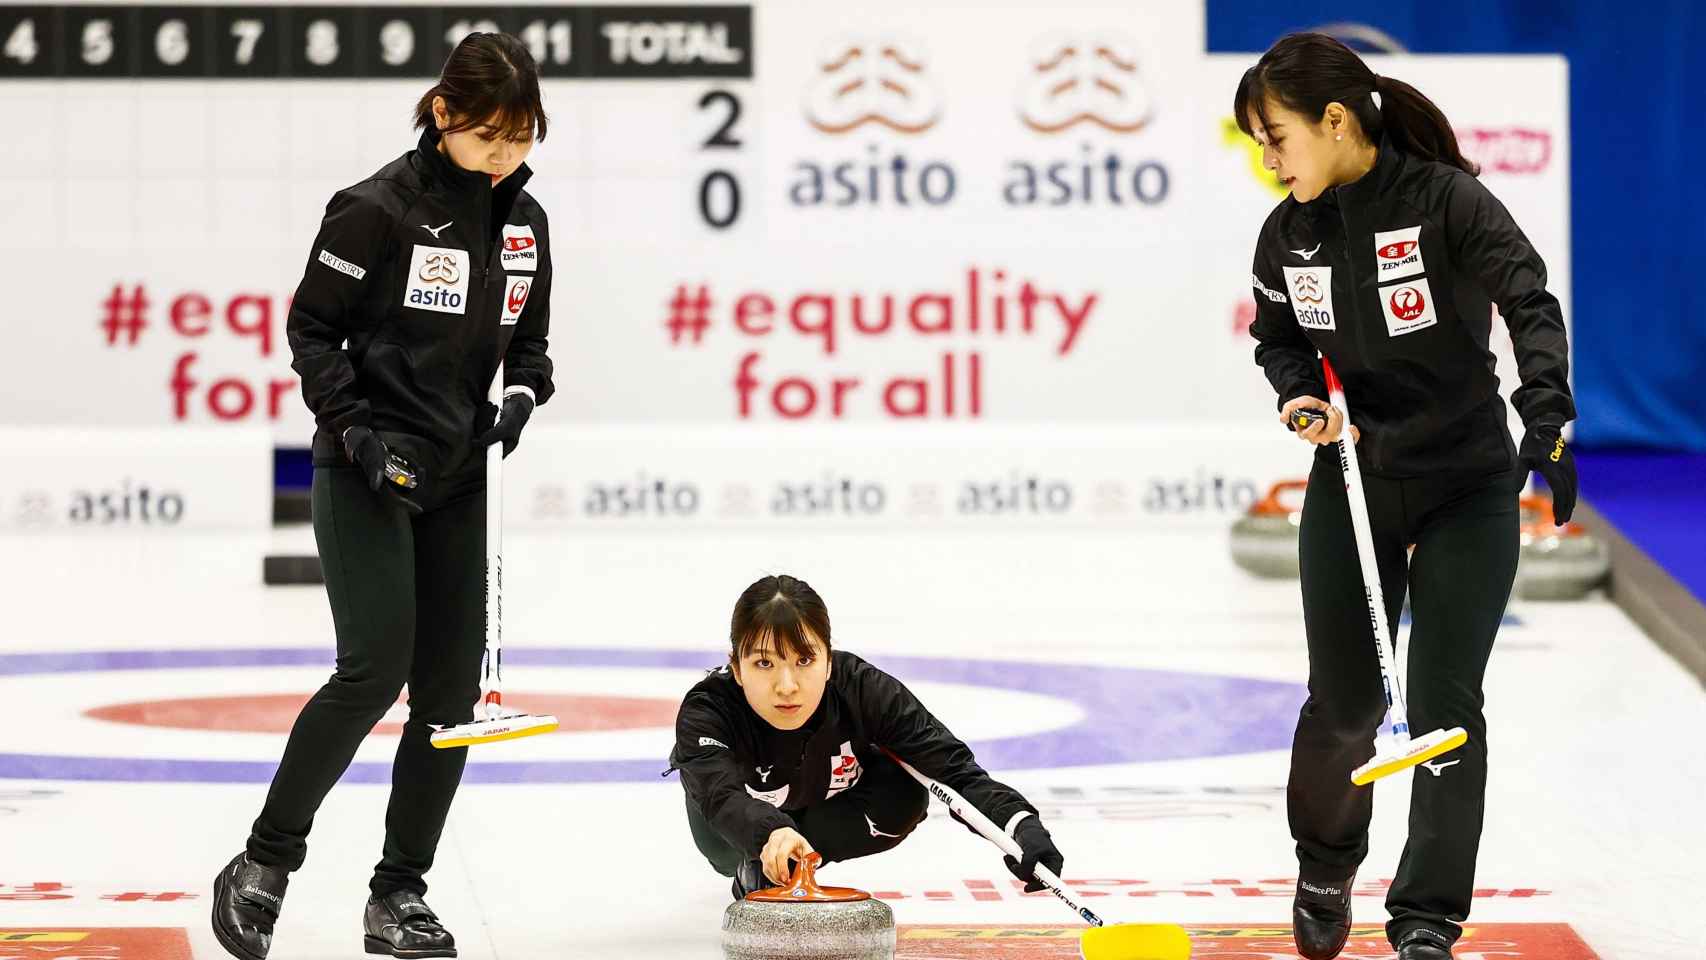 Los nuevos mensajes de igualdad del preolímpico de curling de los JJOO de Pekín 2022 en Países Bajos